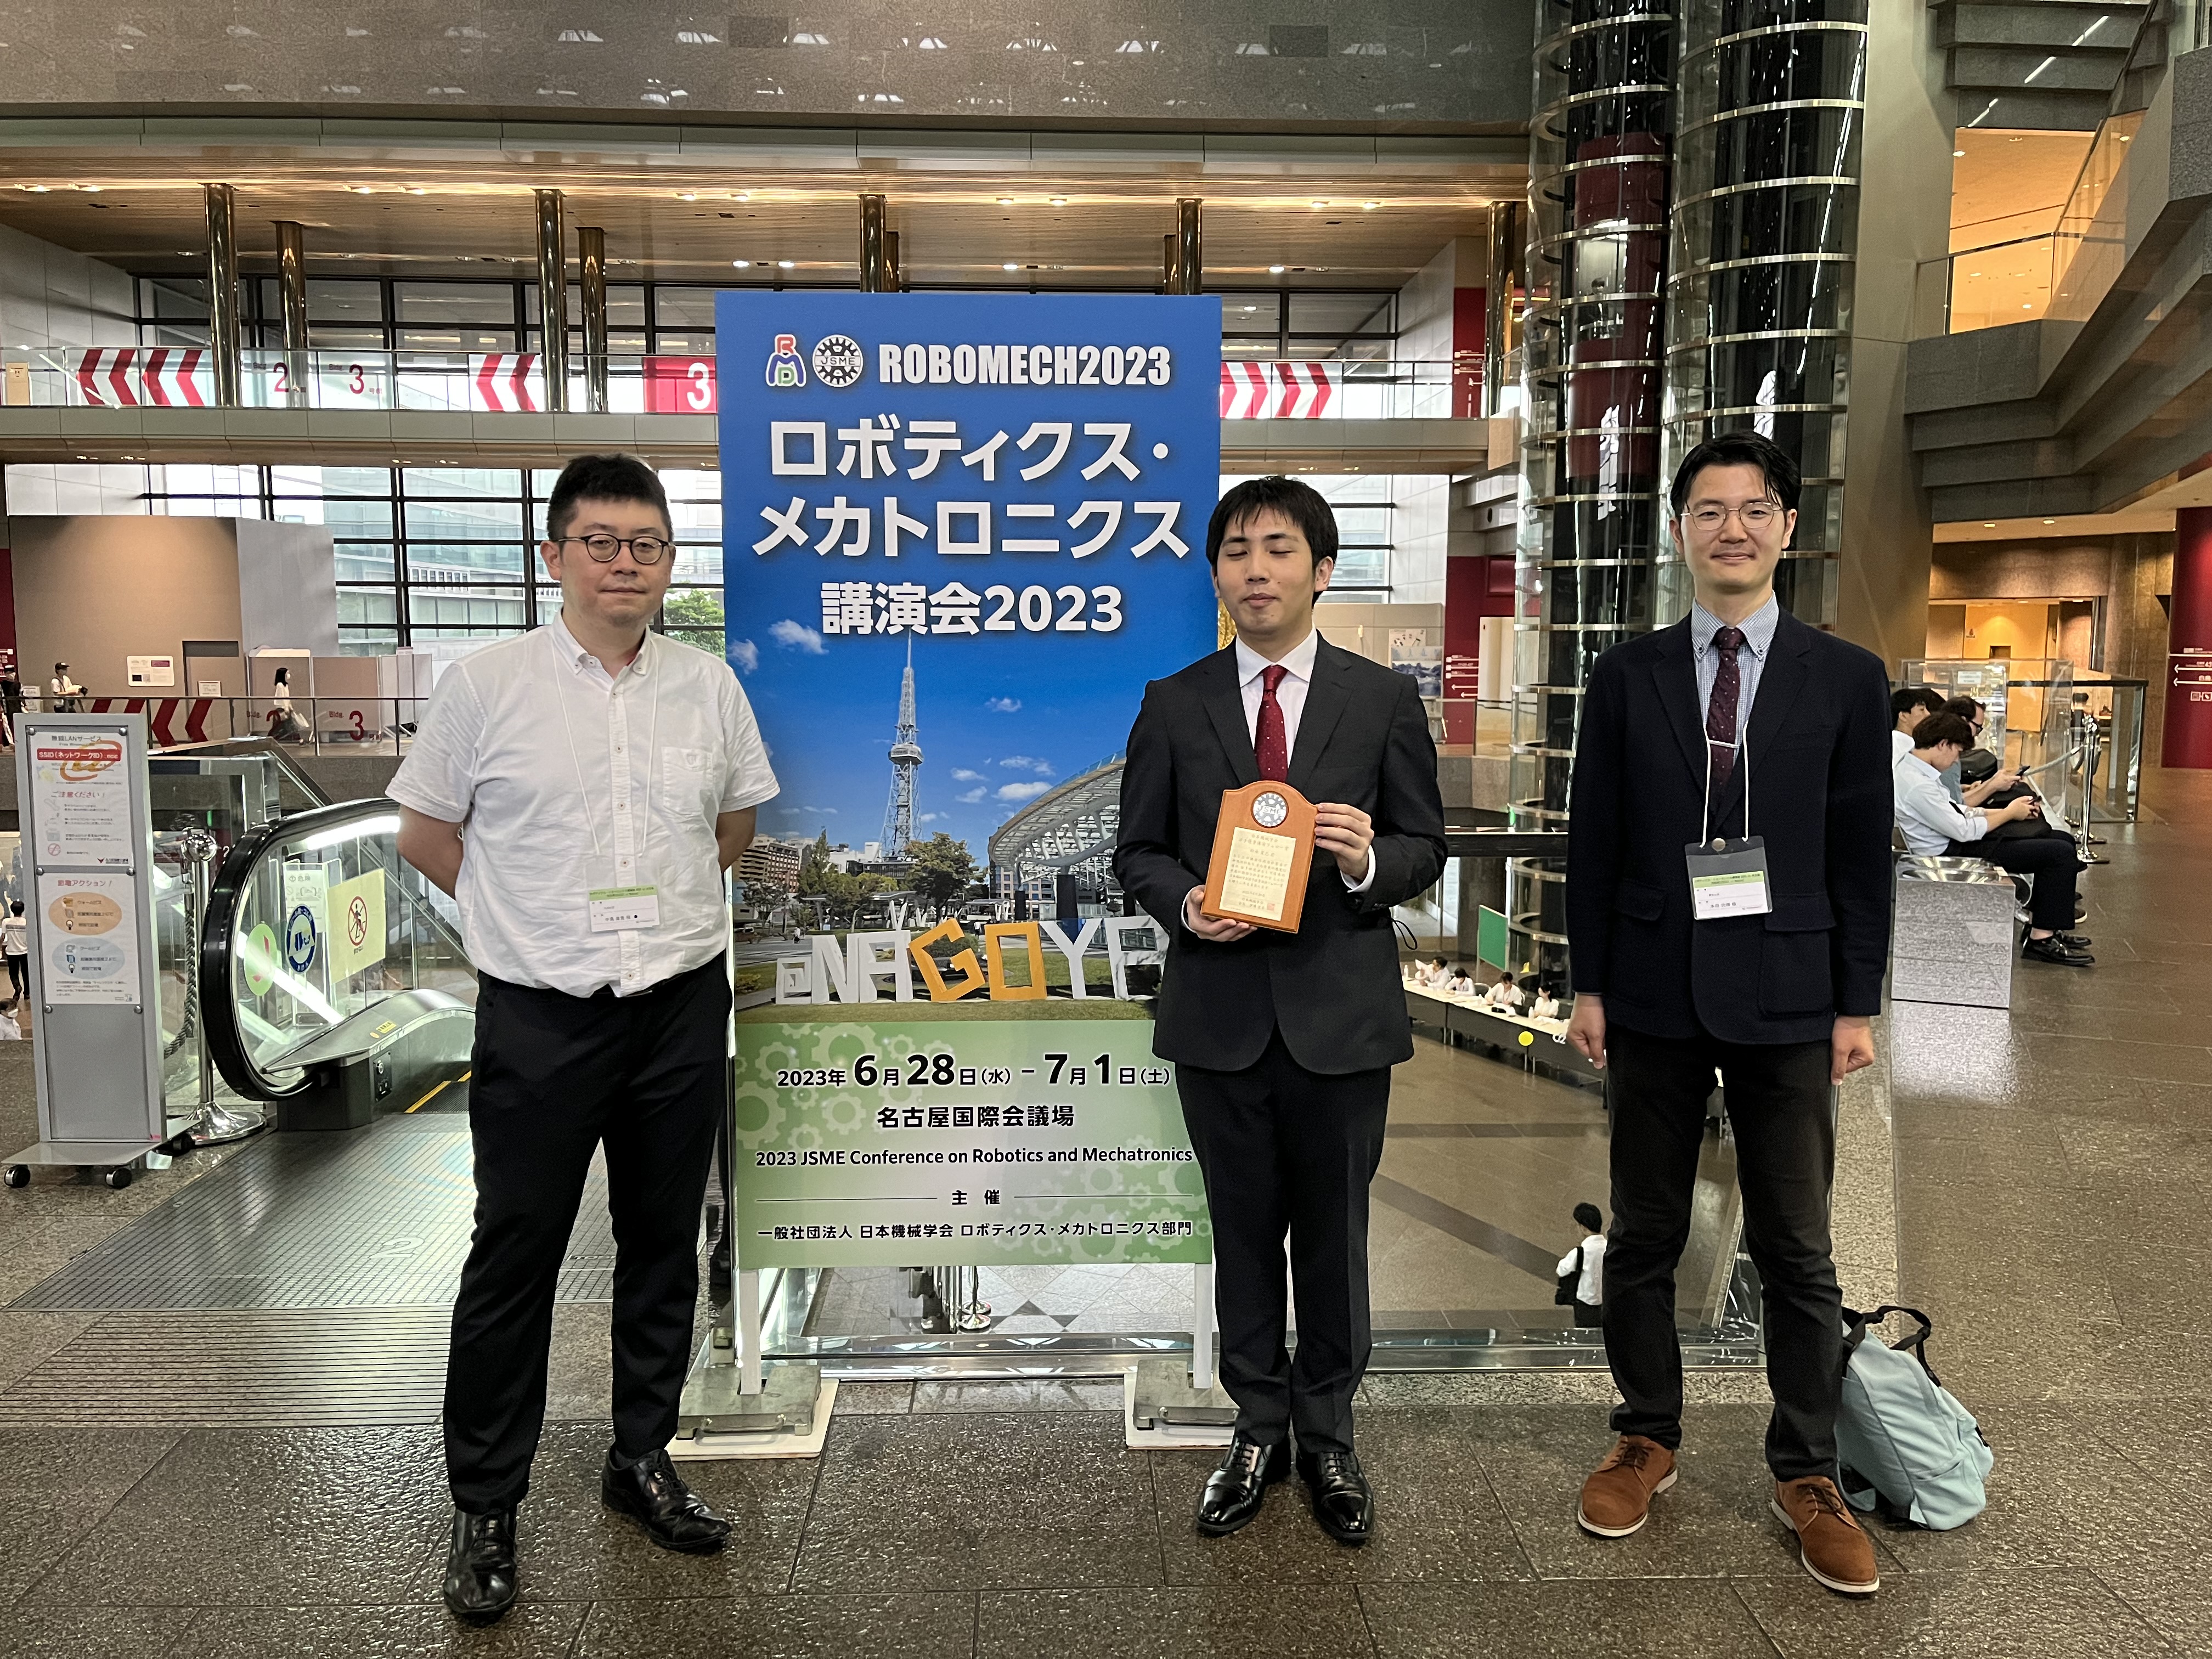 日本機械学会ロボティクスメカトロニクス講演会(横浜)に参加発表しました。④